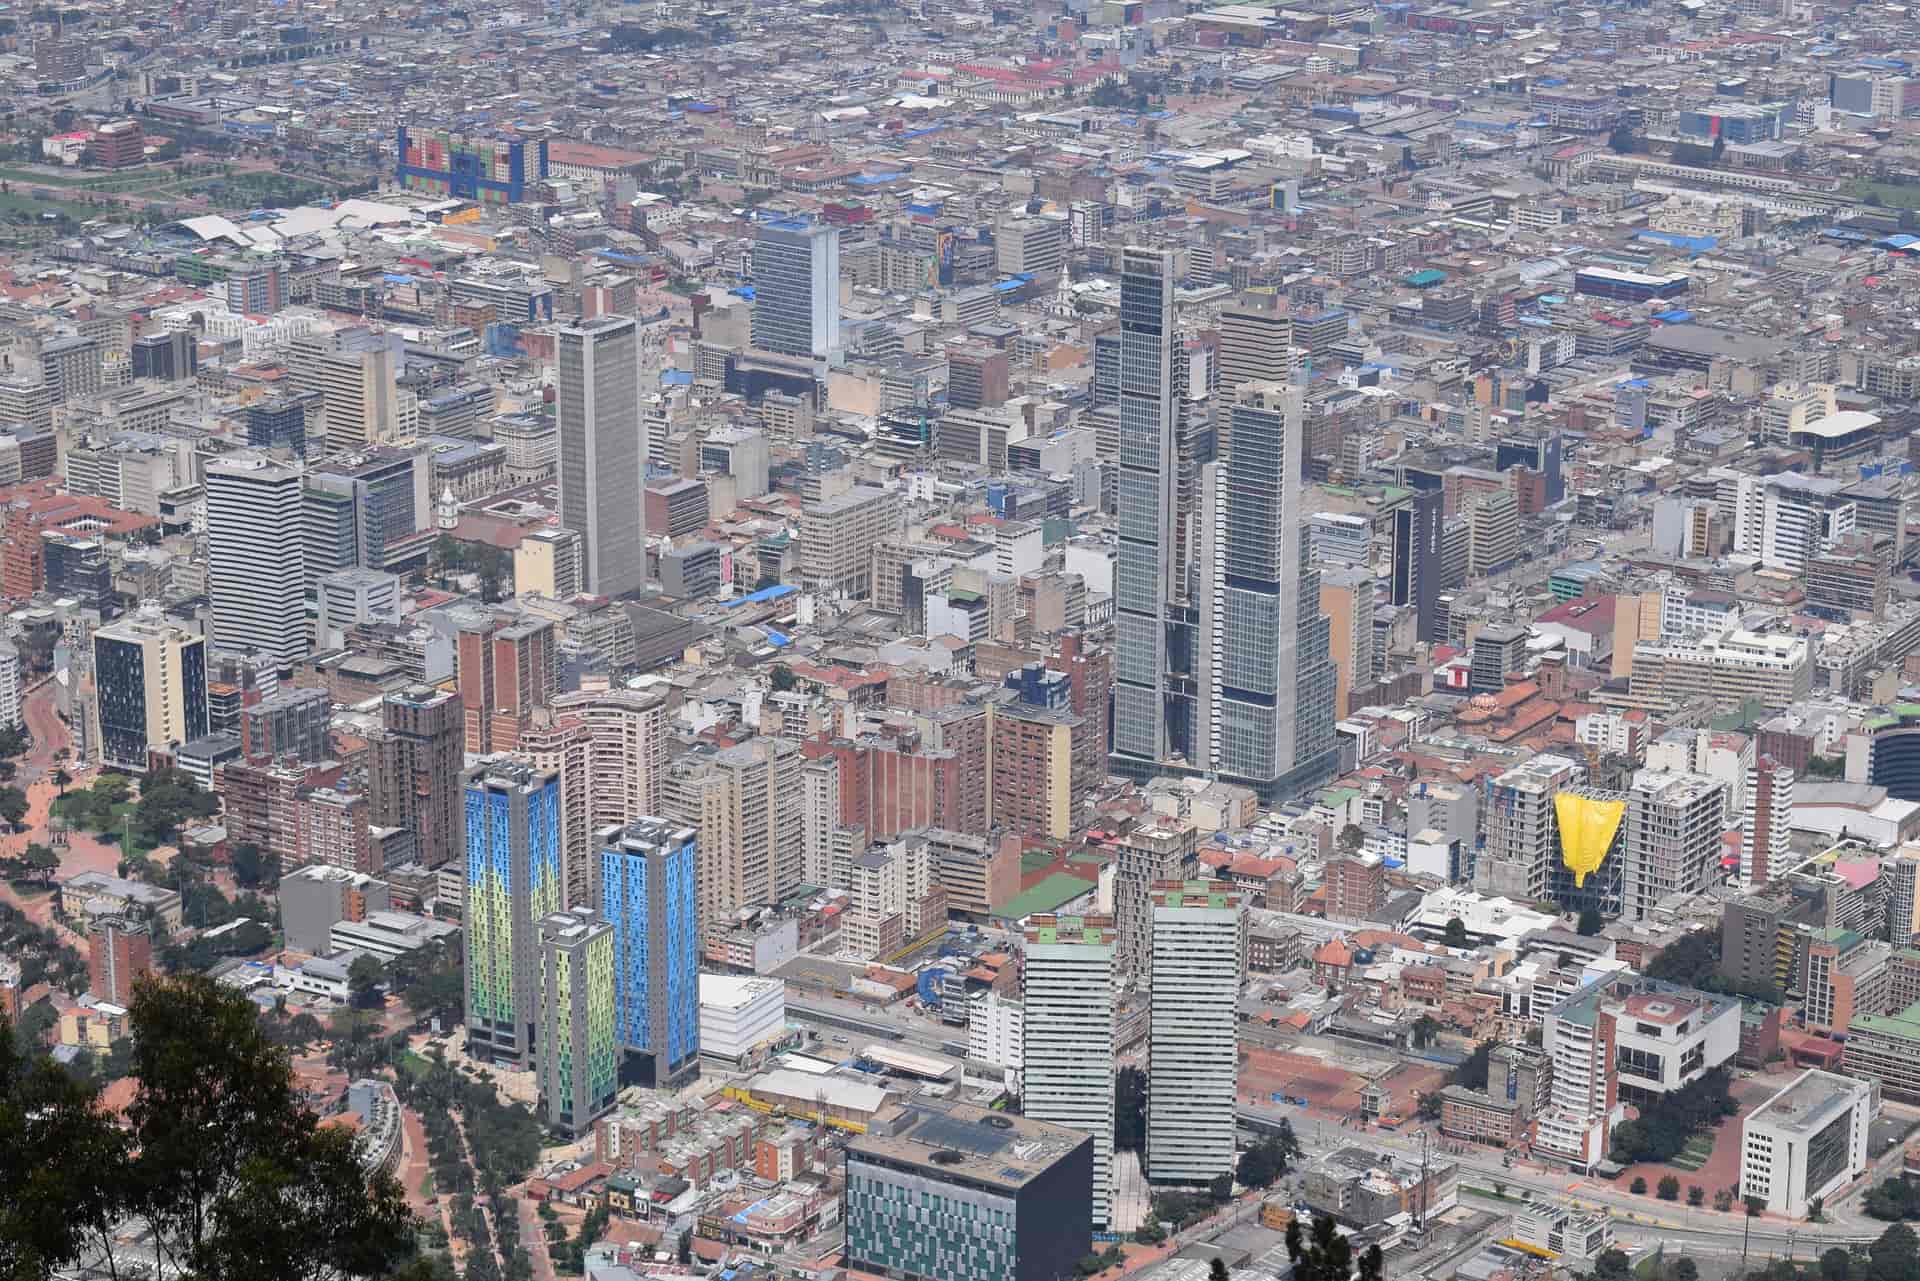 Imagen Panorámica de la ciudad de Bogotá en Colombia. Cicerone Plus